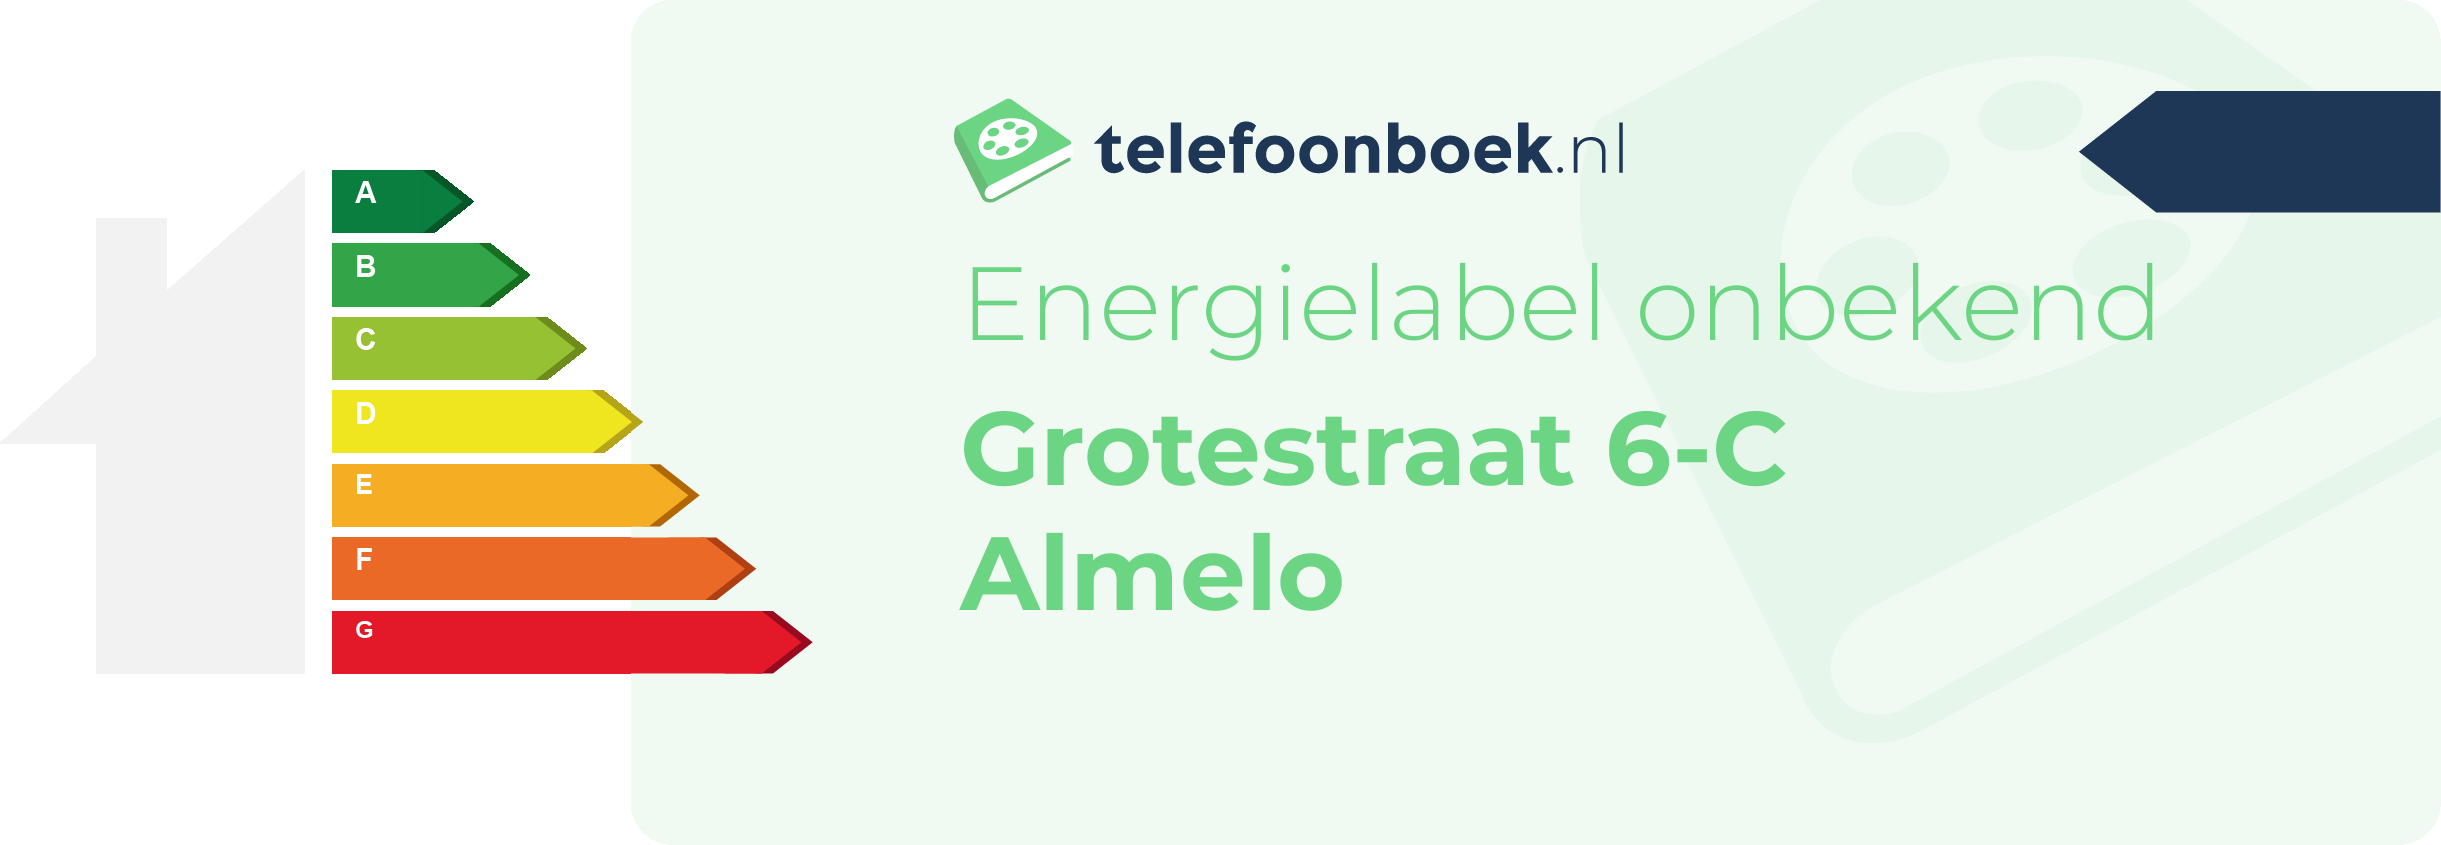 Energielabel Grotestraat 6-C Almelo